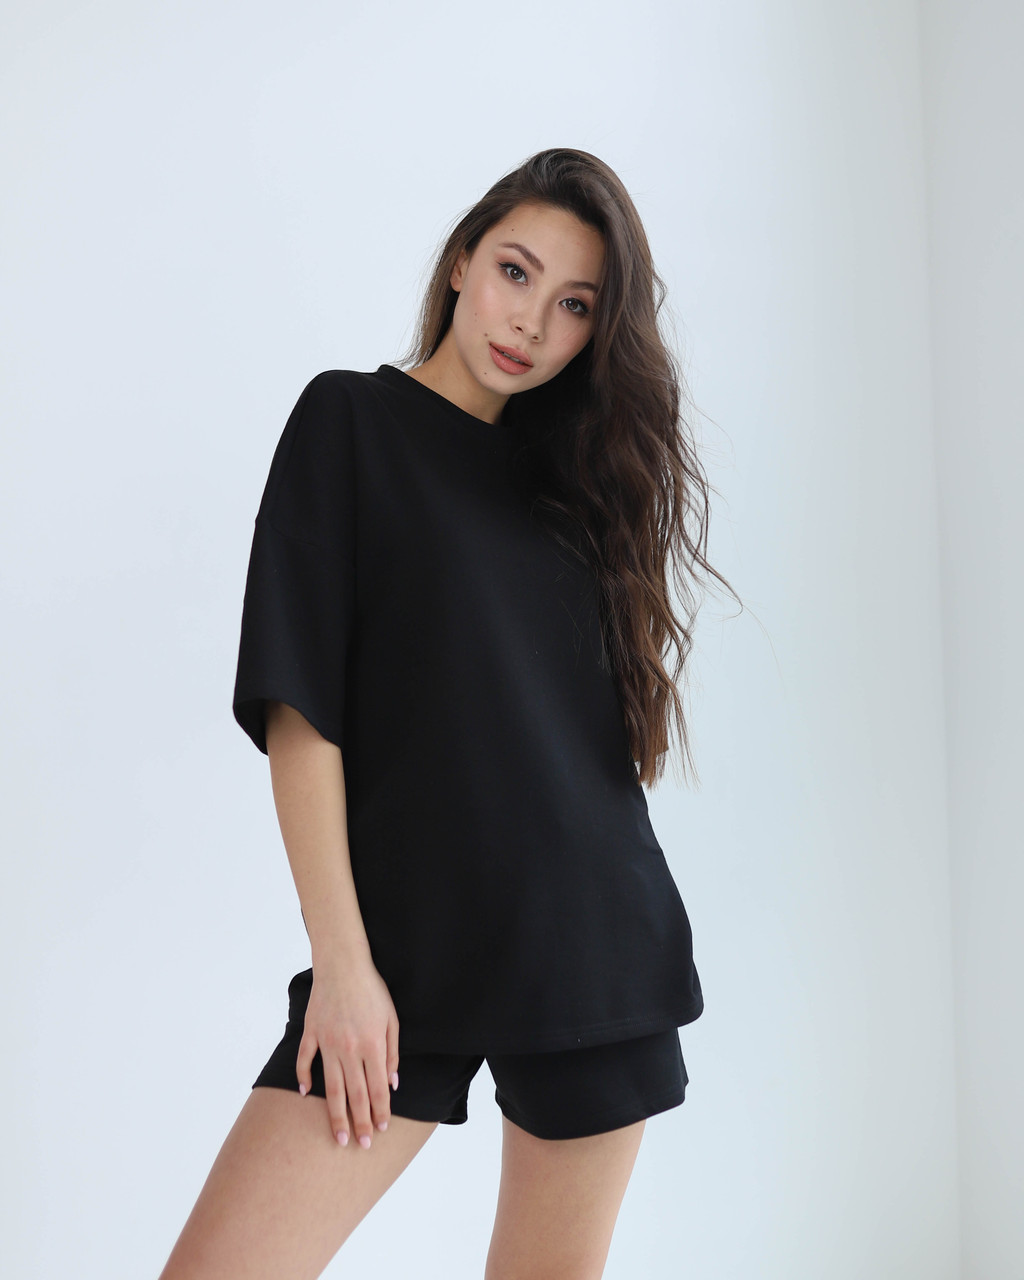 Літній комплект футболка і шорти жіночий чорний оверсайз модель Мія від бренду Тур, розміри: S, M, L TURWEAR - Фото 6